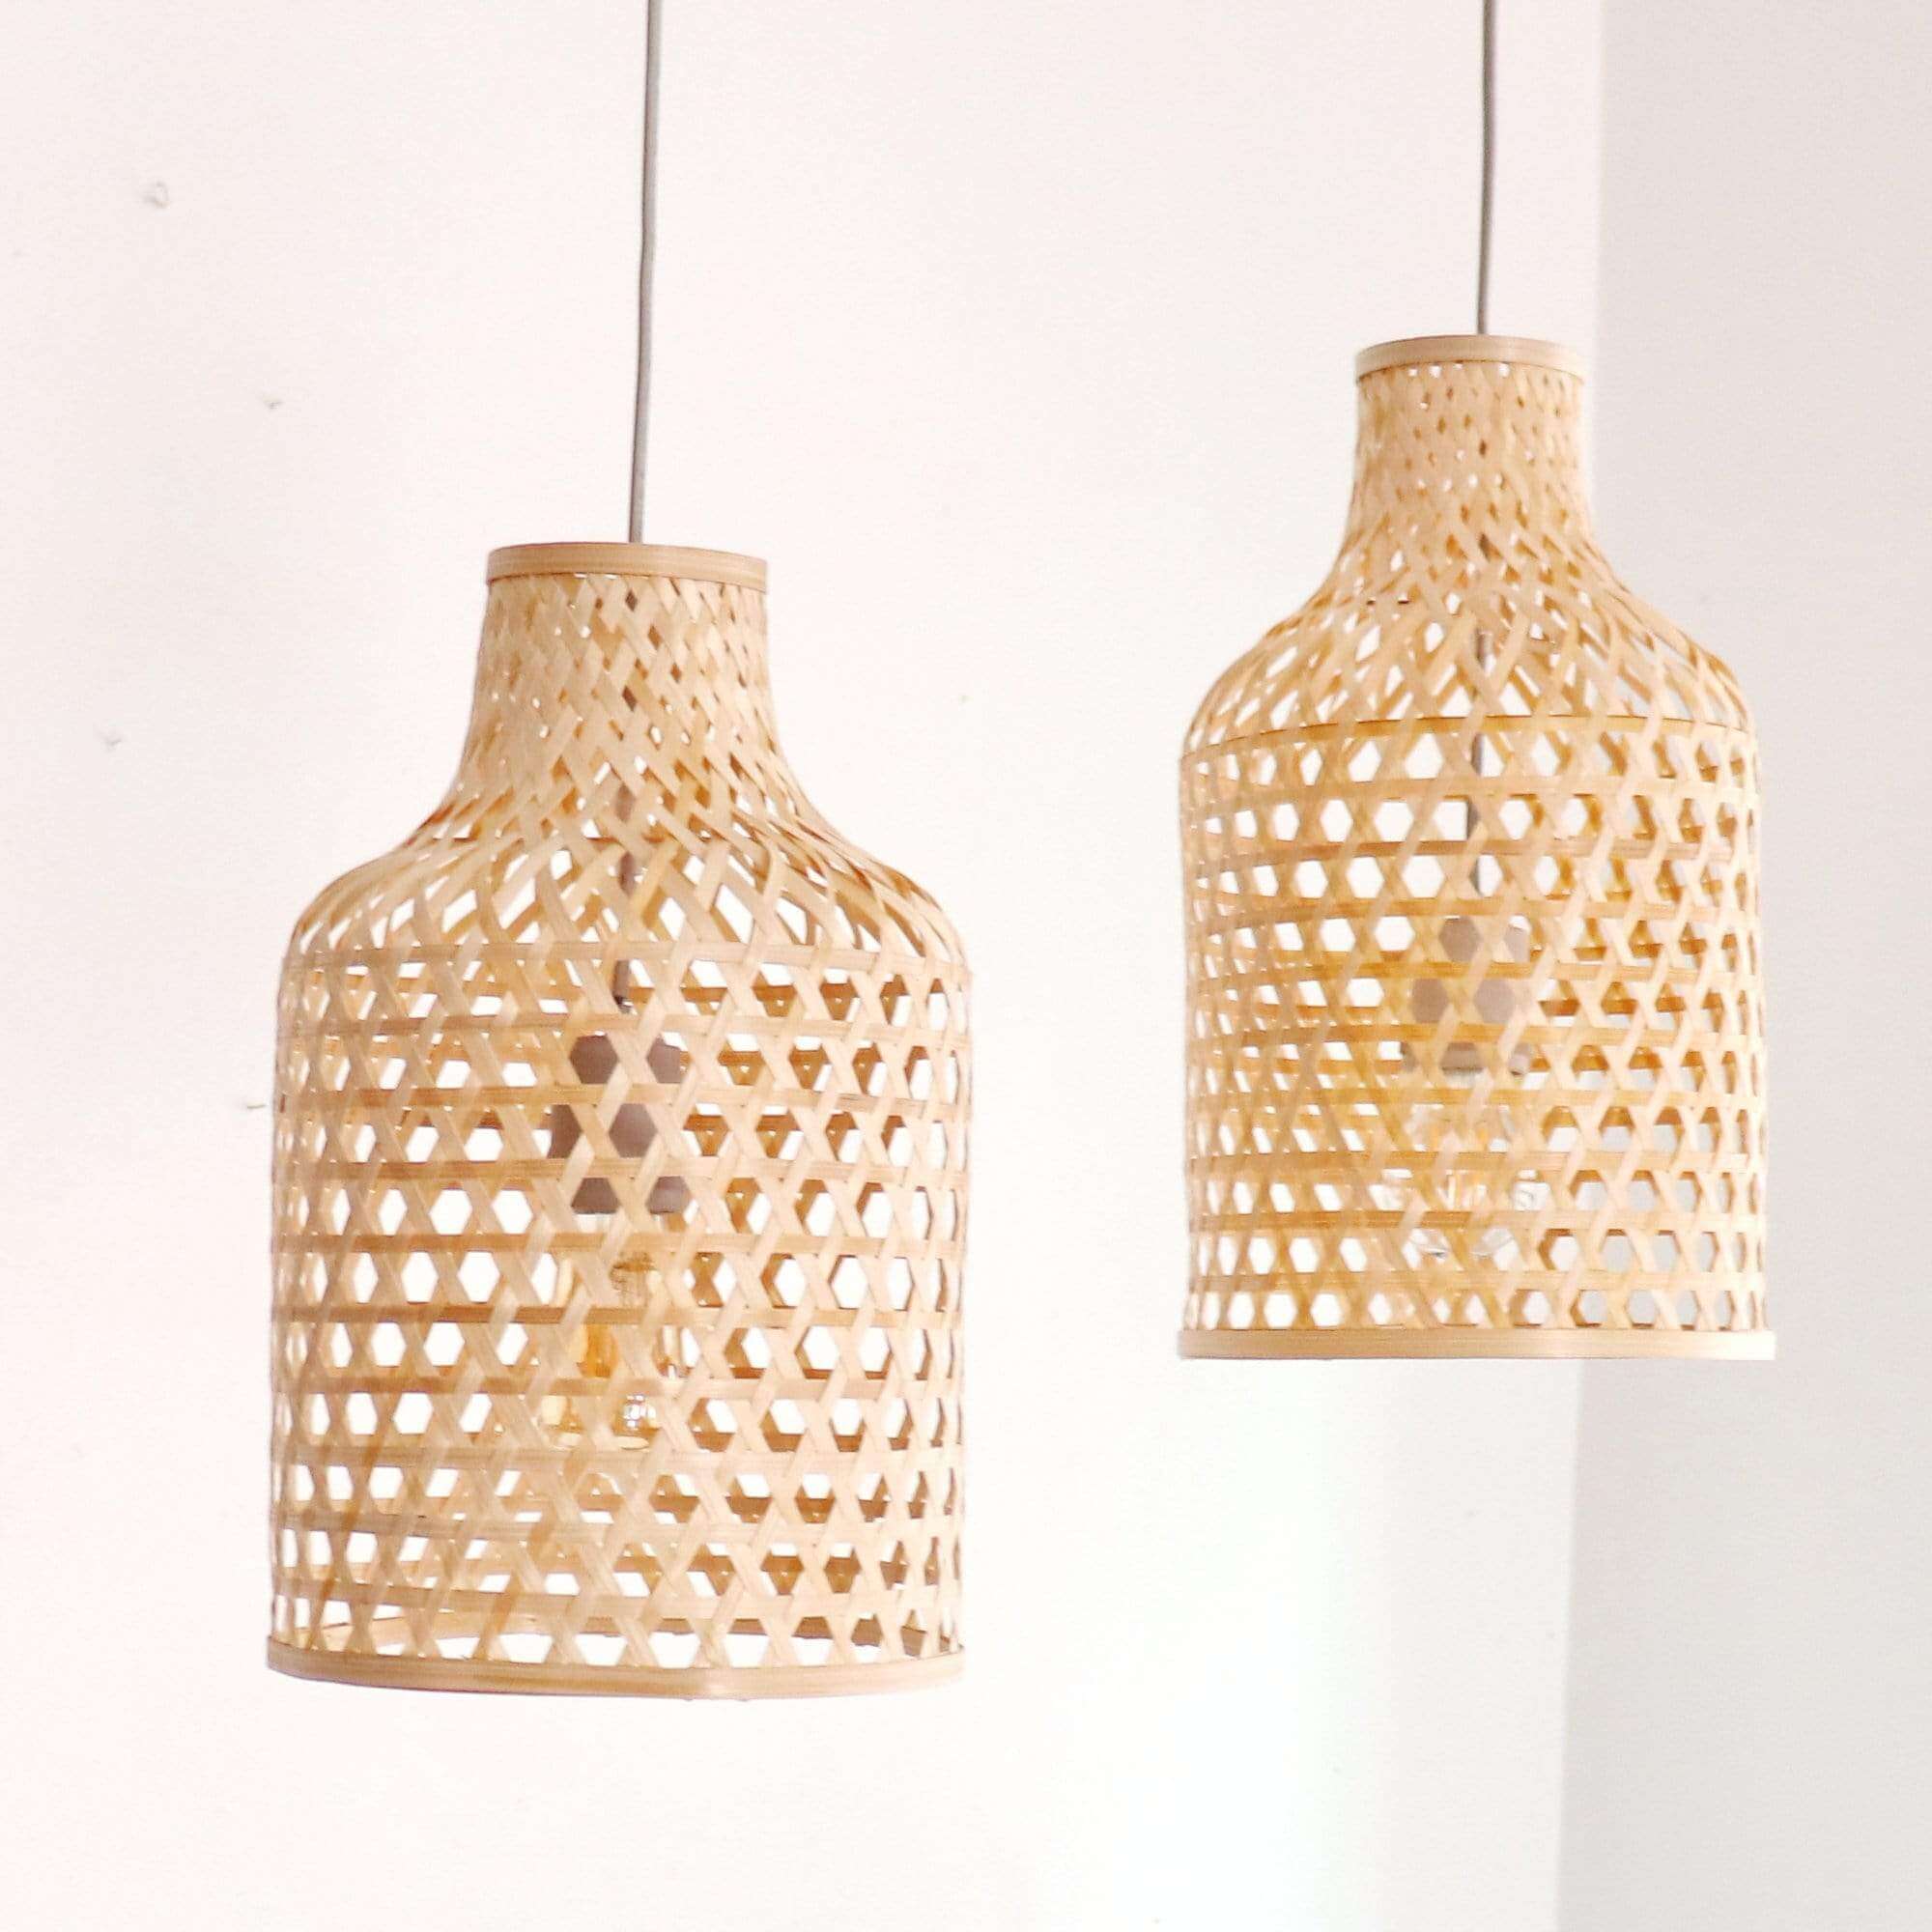 KA NOK JUN - Bamboo Pendant Light